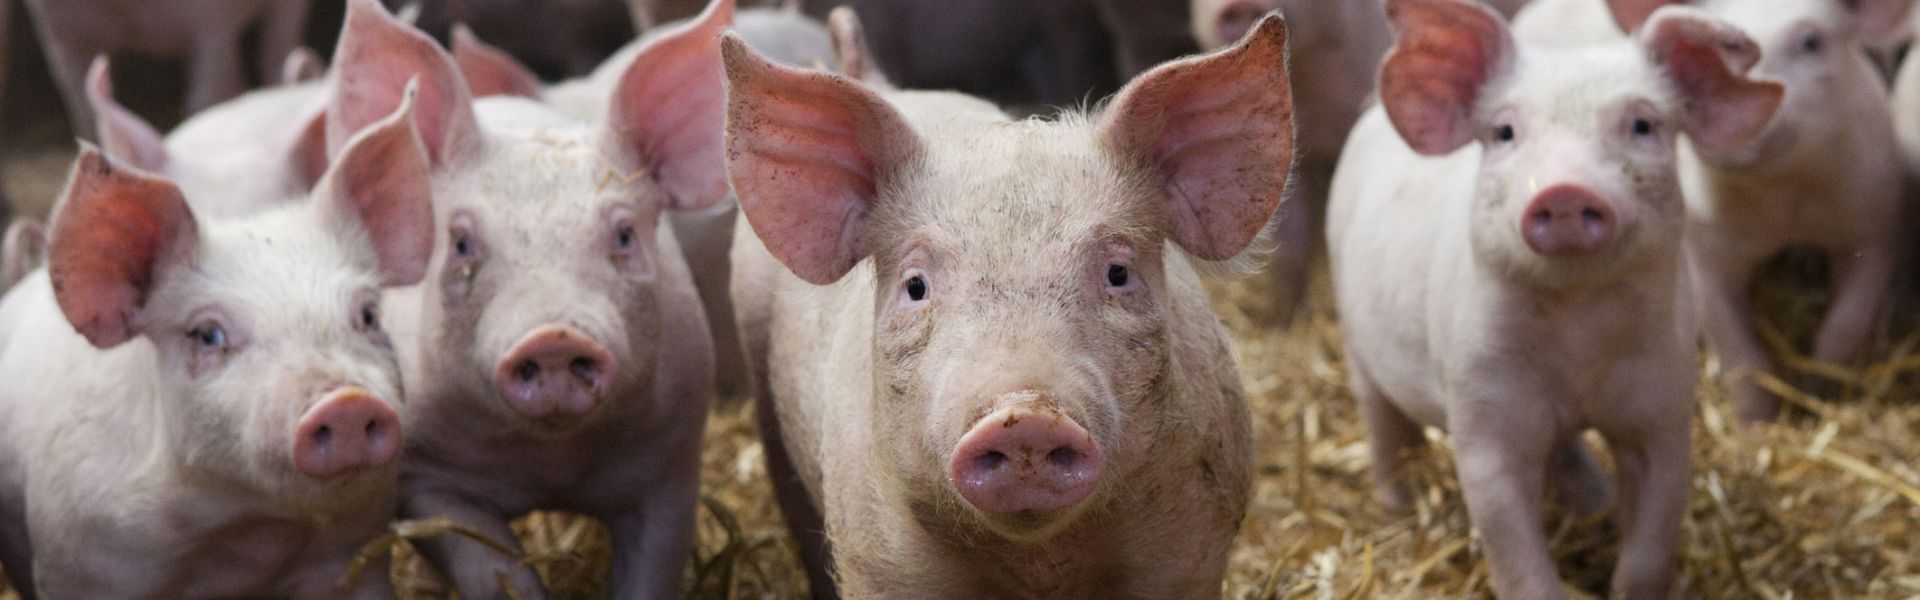 Swine flu: a challenge for livestock and human health | Anses - Agence  nationale de sécurité sanitaire de l'alimentation, de l'environnement et du  travail